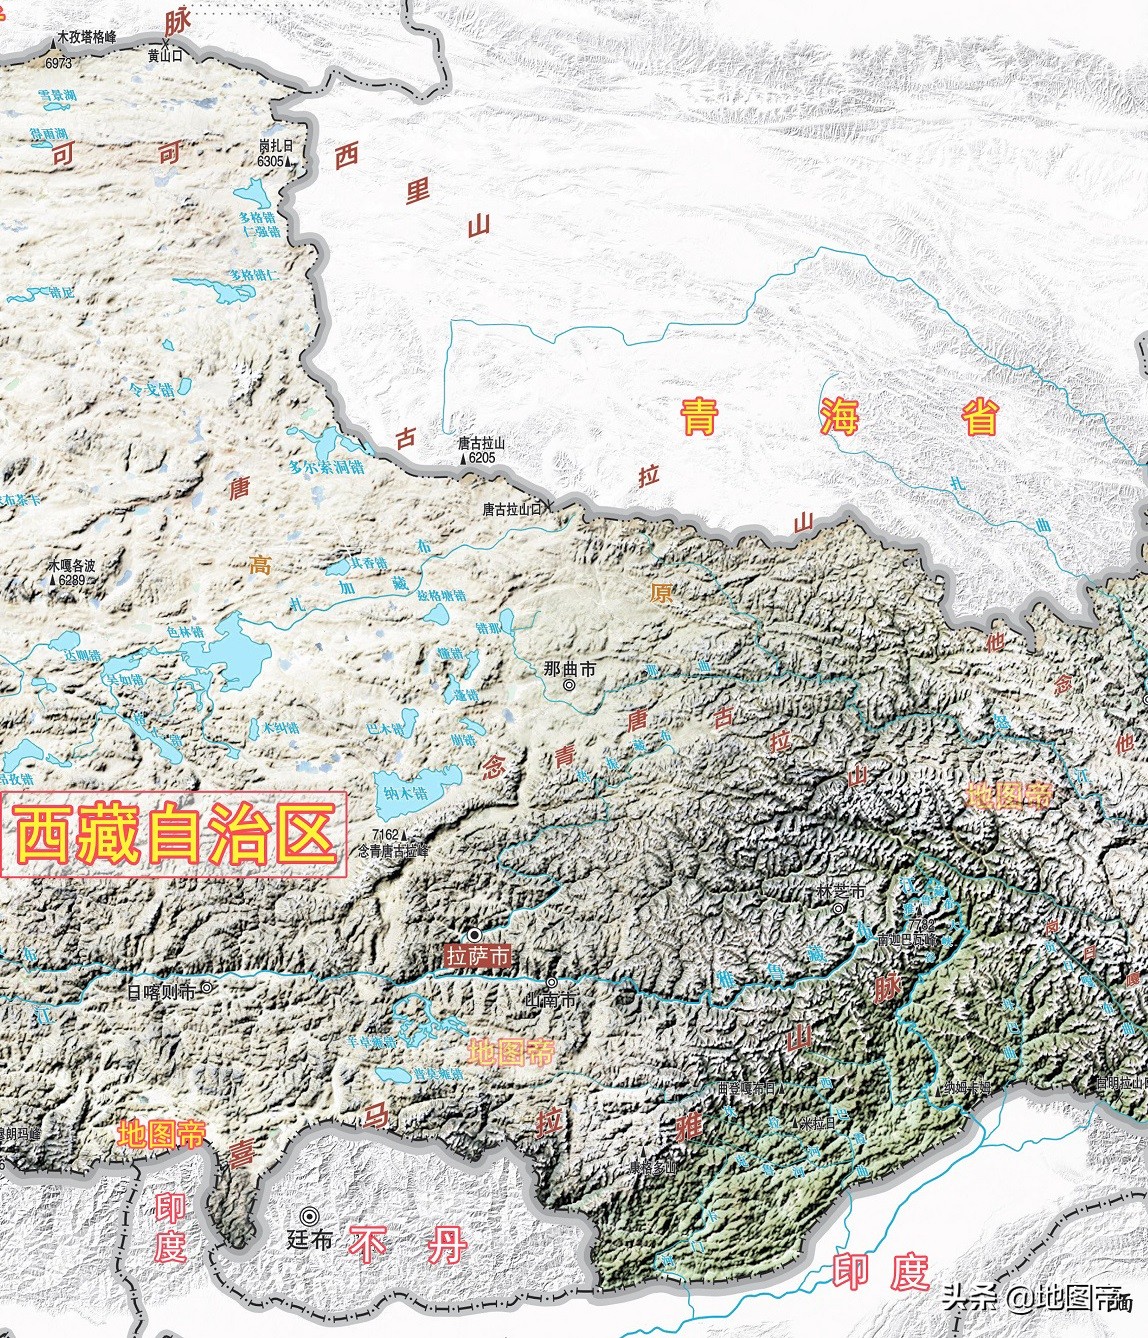 青藏铁路是单线，如果会车超车怎么办？